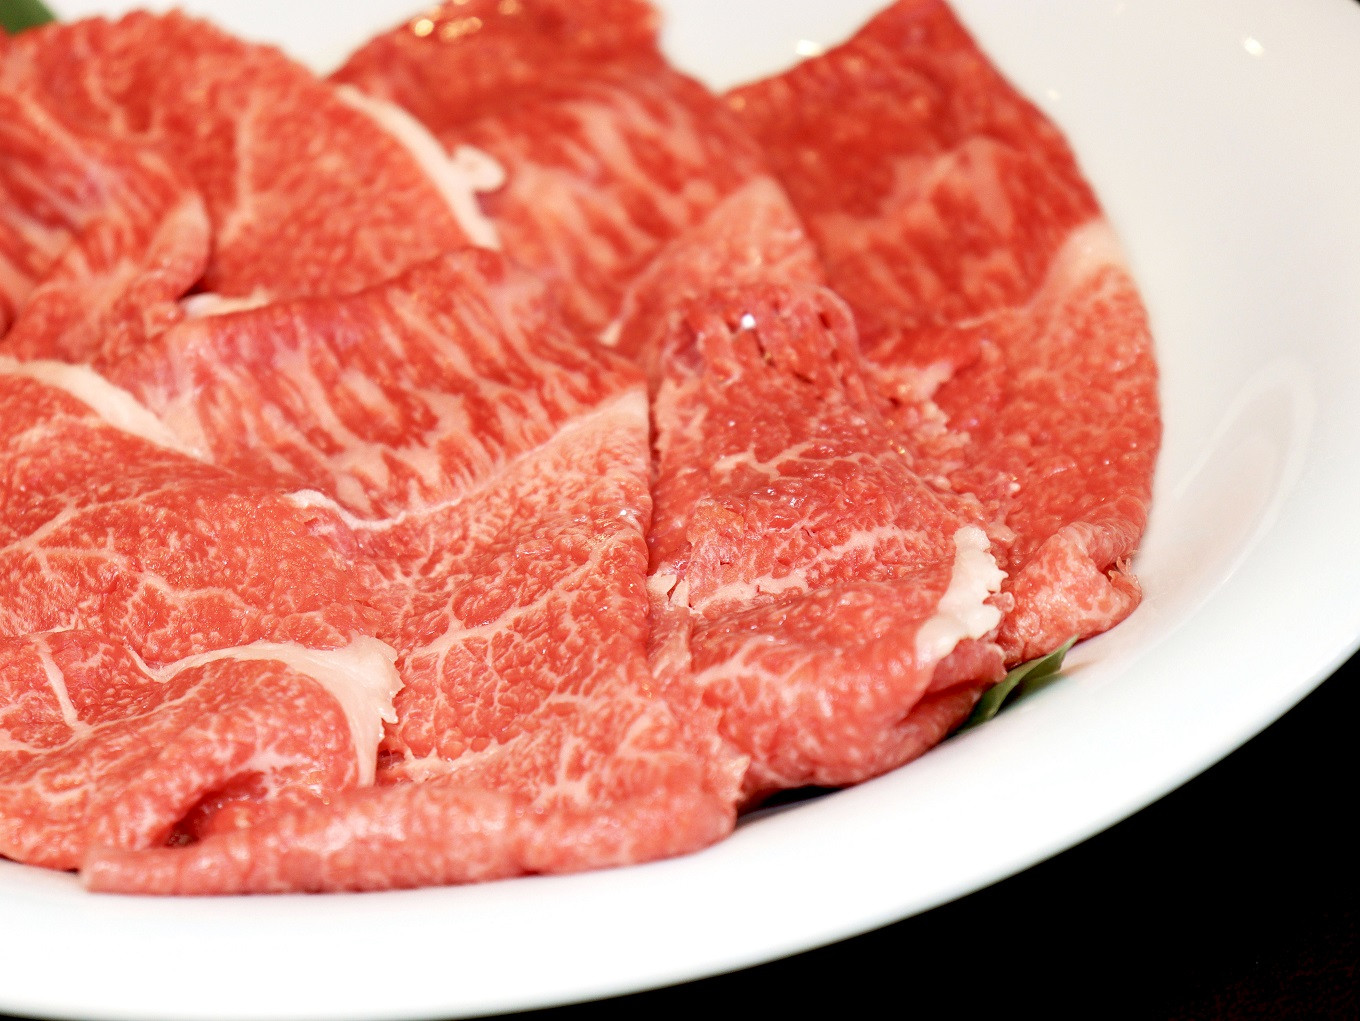 京都らしいきめ細やかで上品な味わいの肉を提供しています。